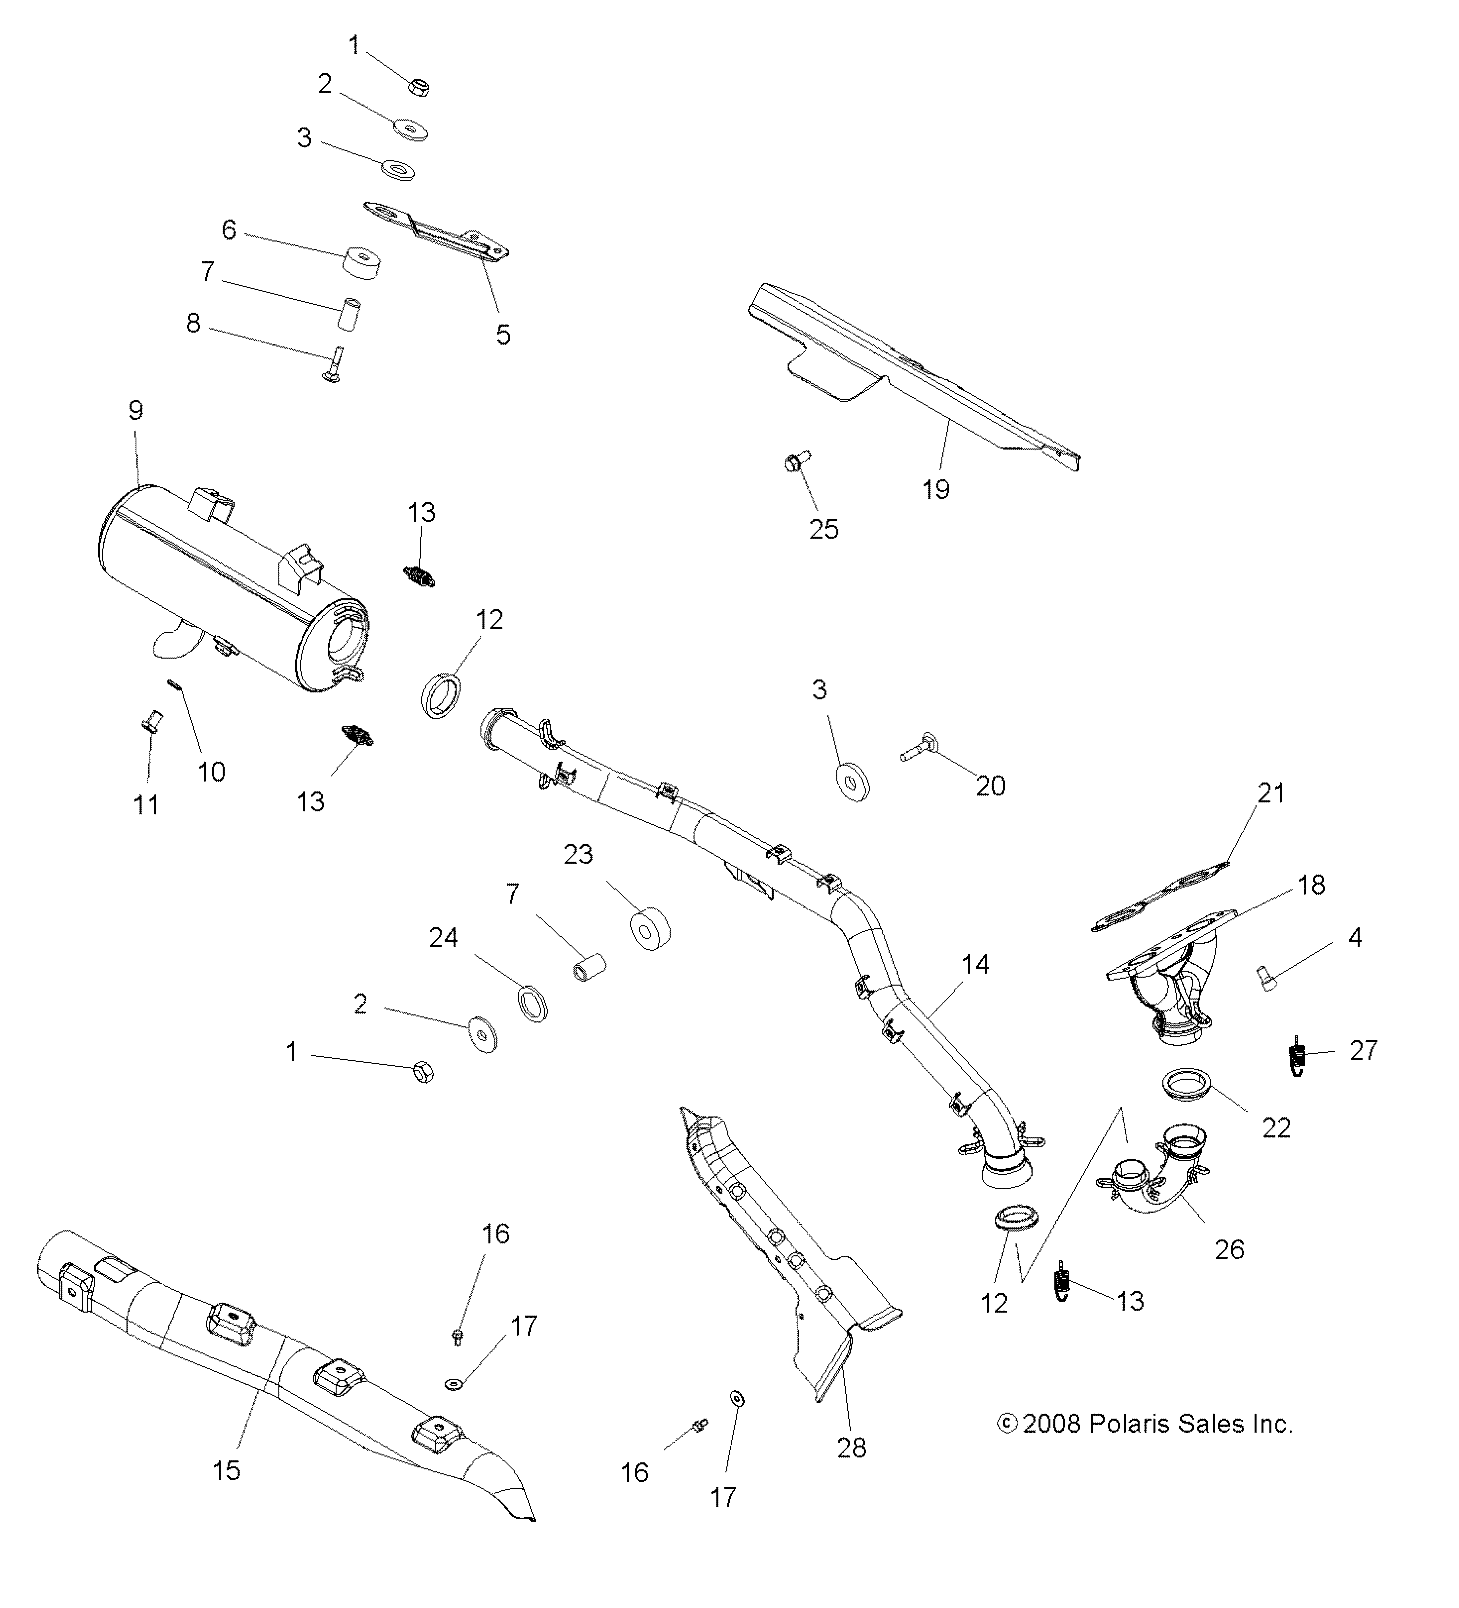 Foto diagrama Polaris que contem a peça 1261772-489